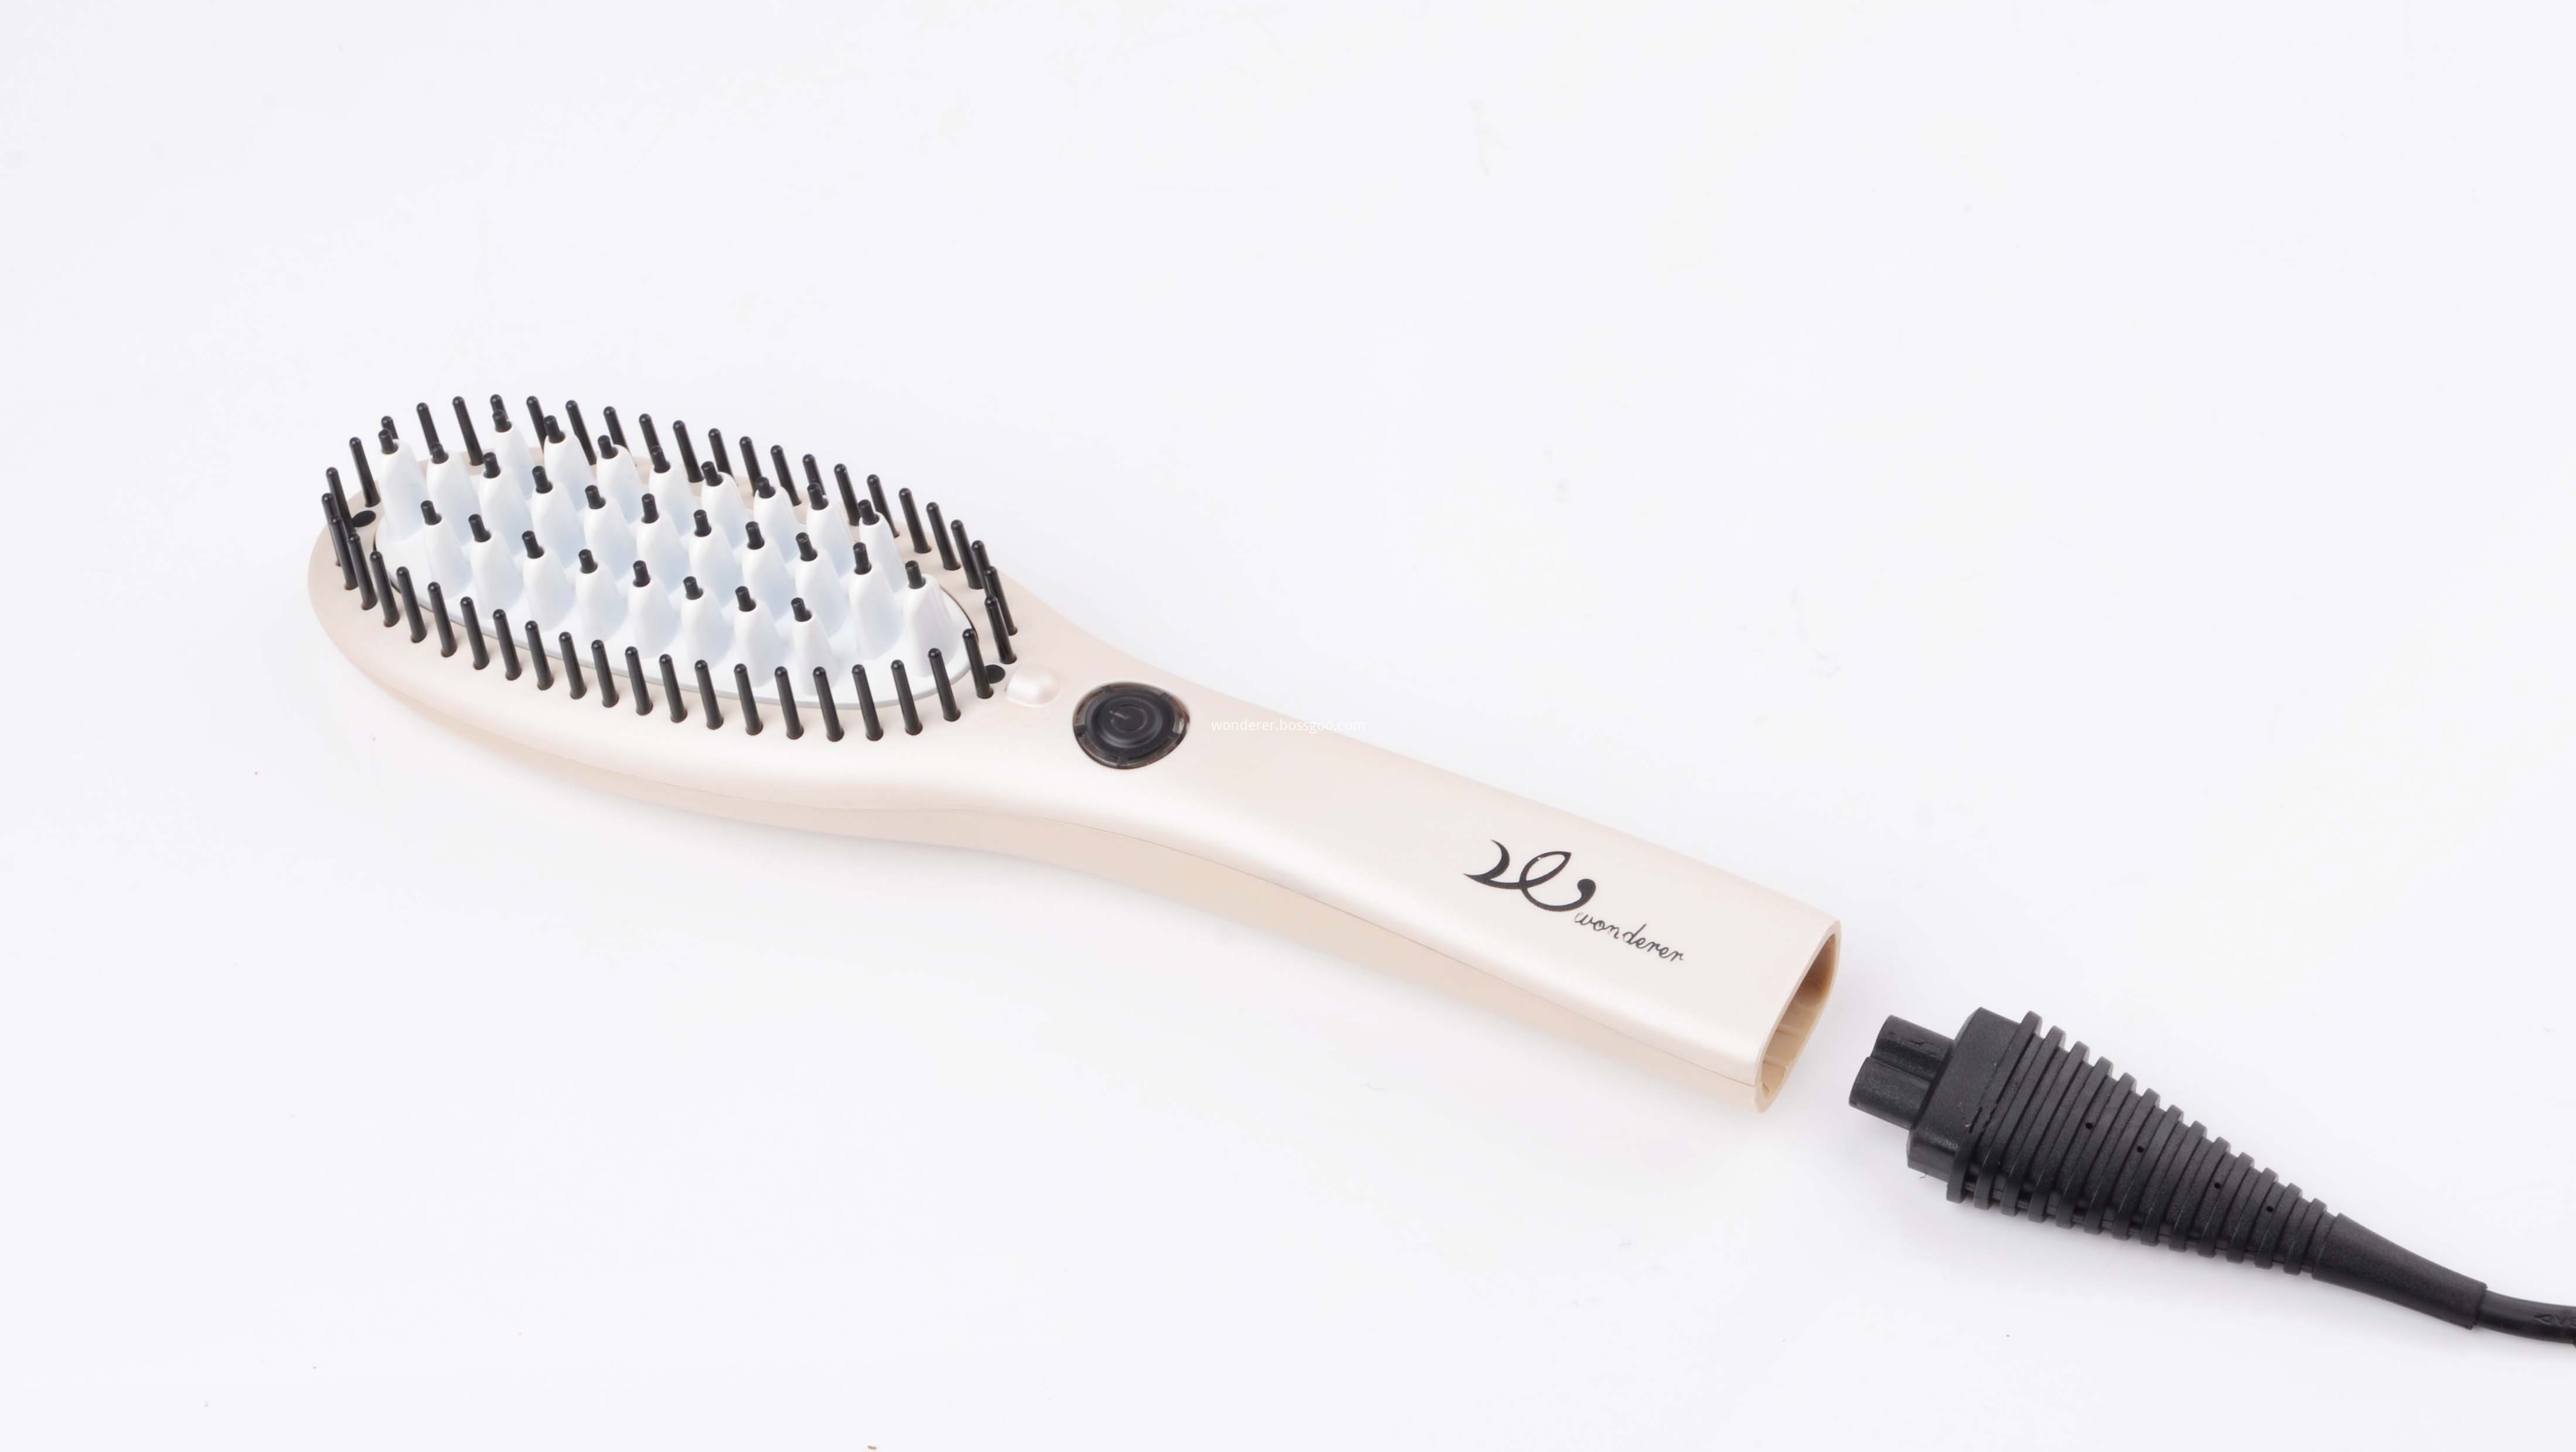 Hair Straightening Ionic Brush